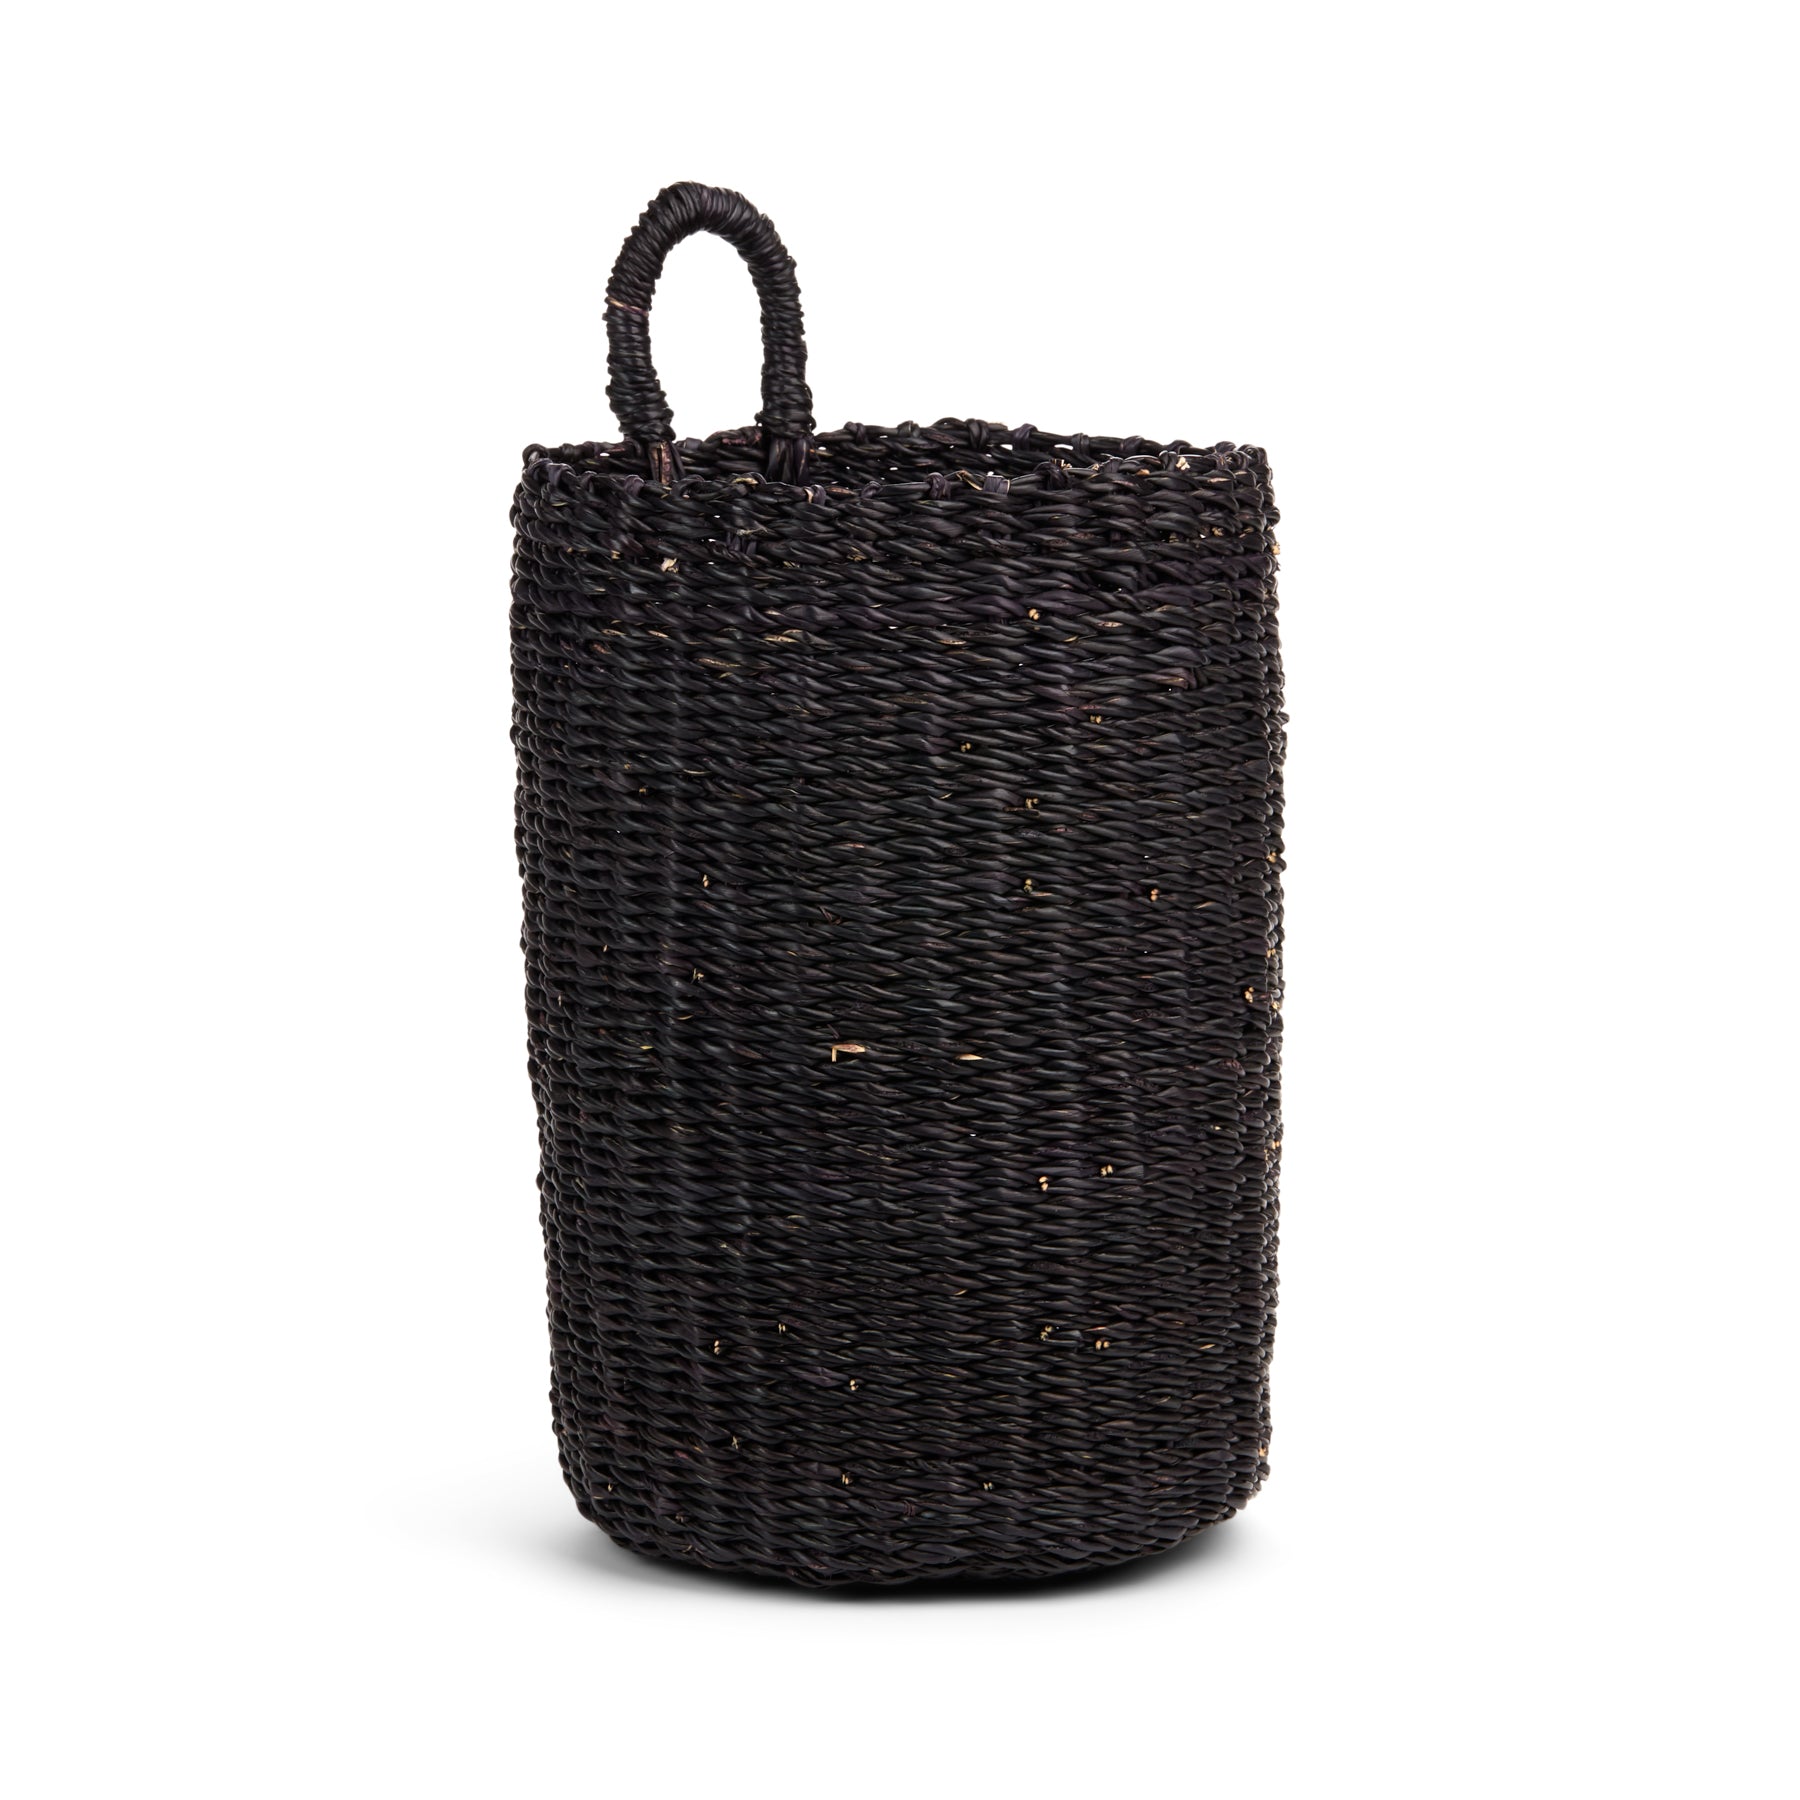 Black Hanging Basket